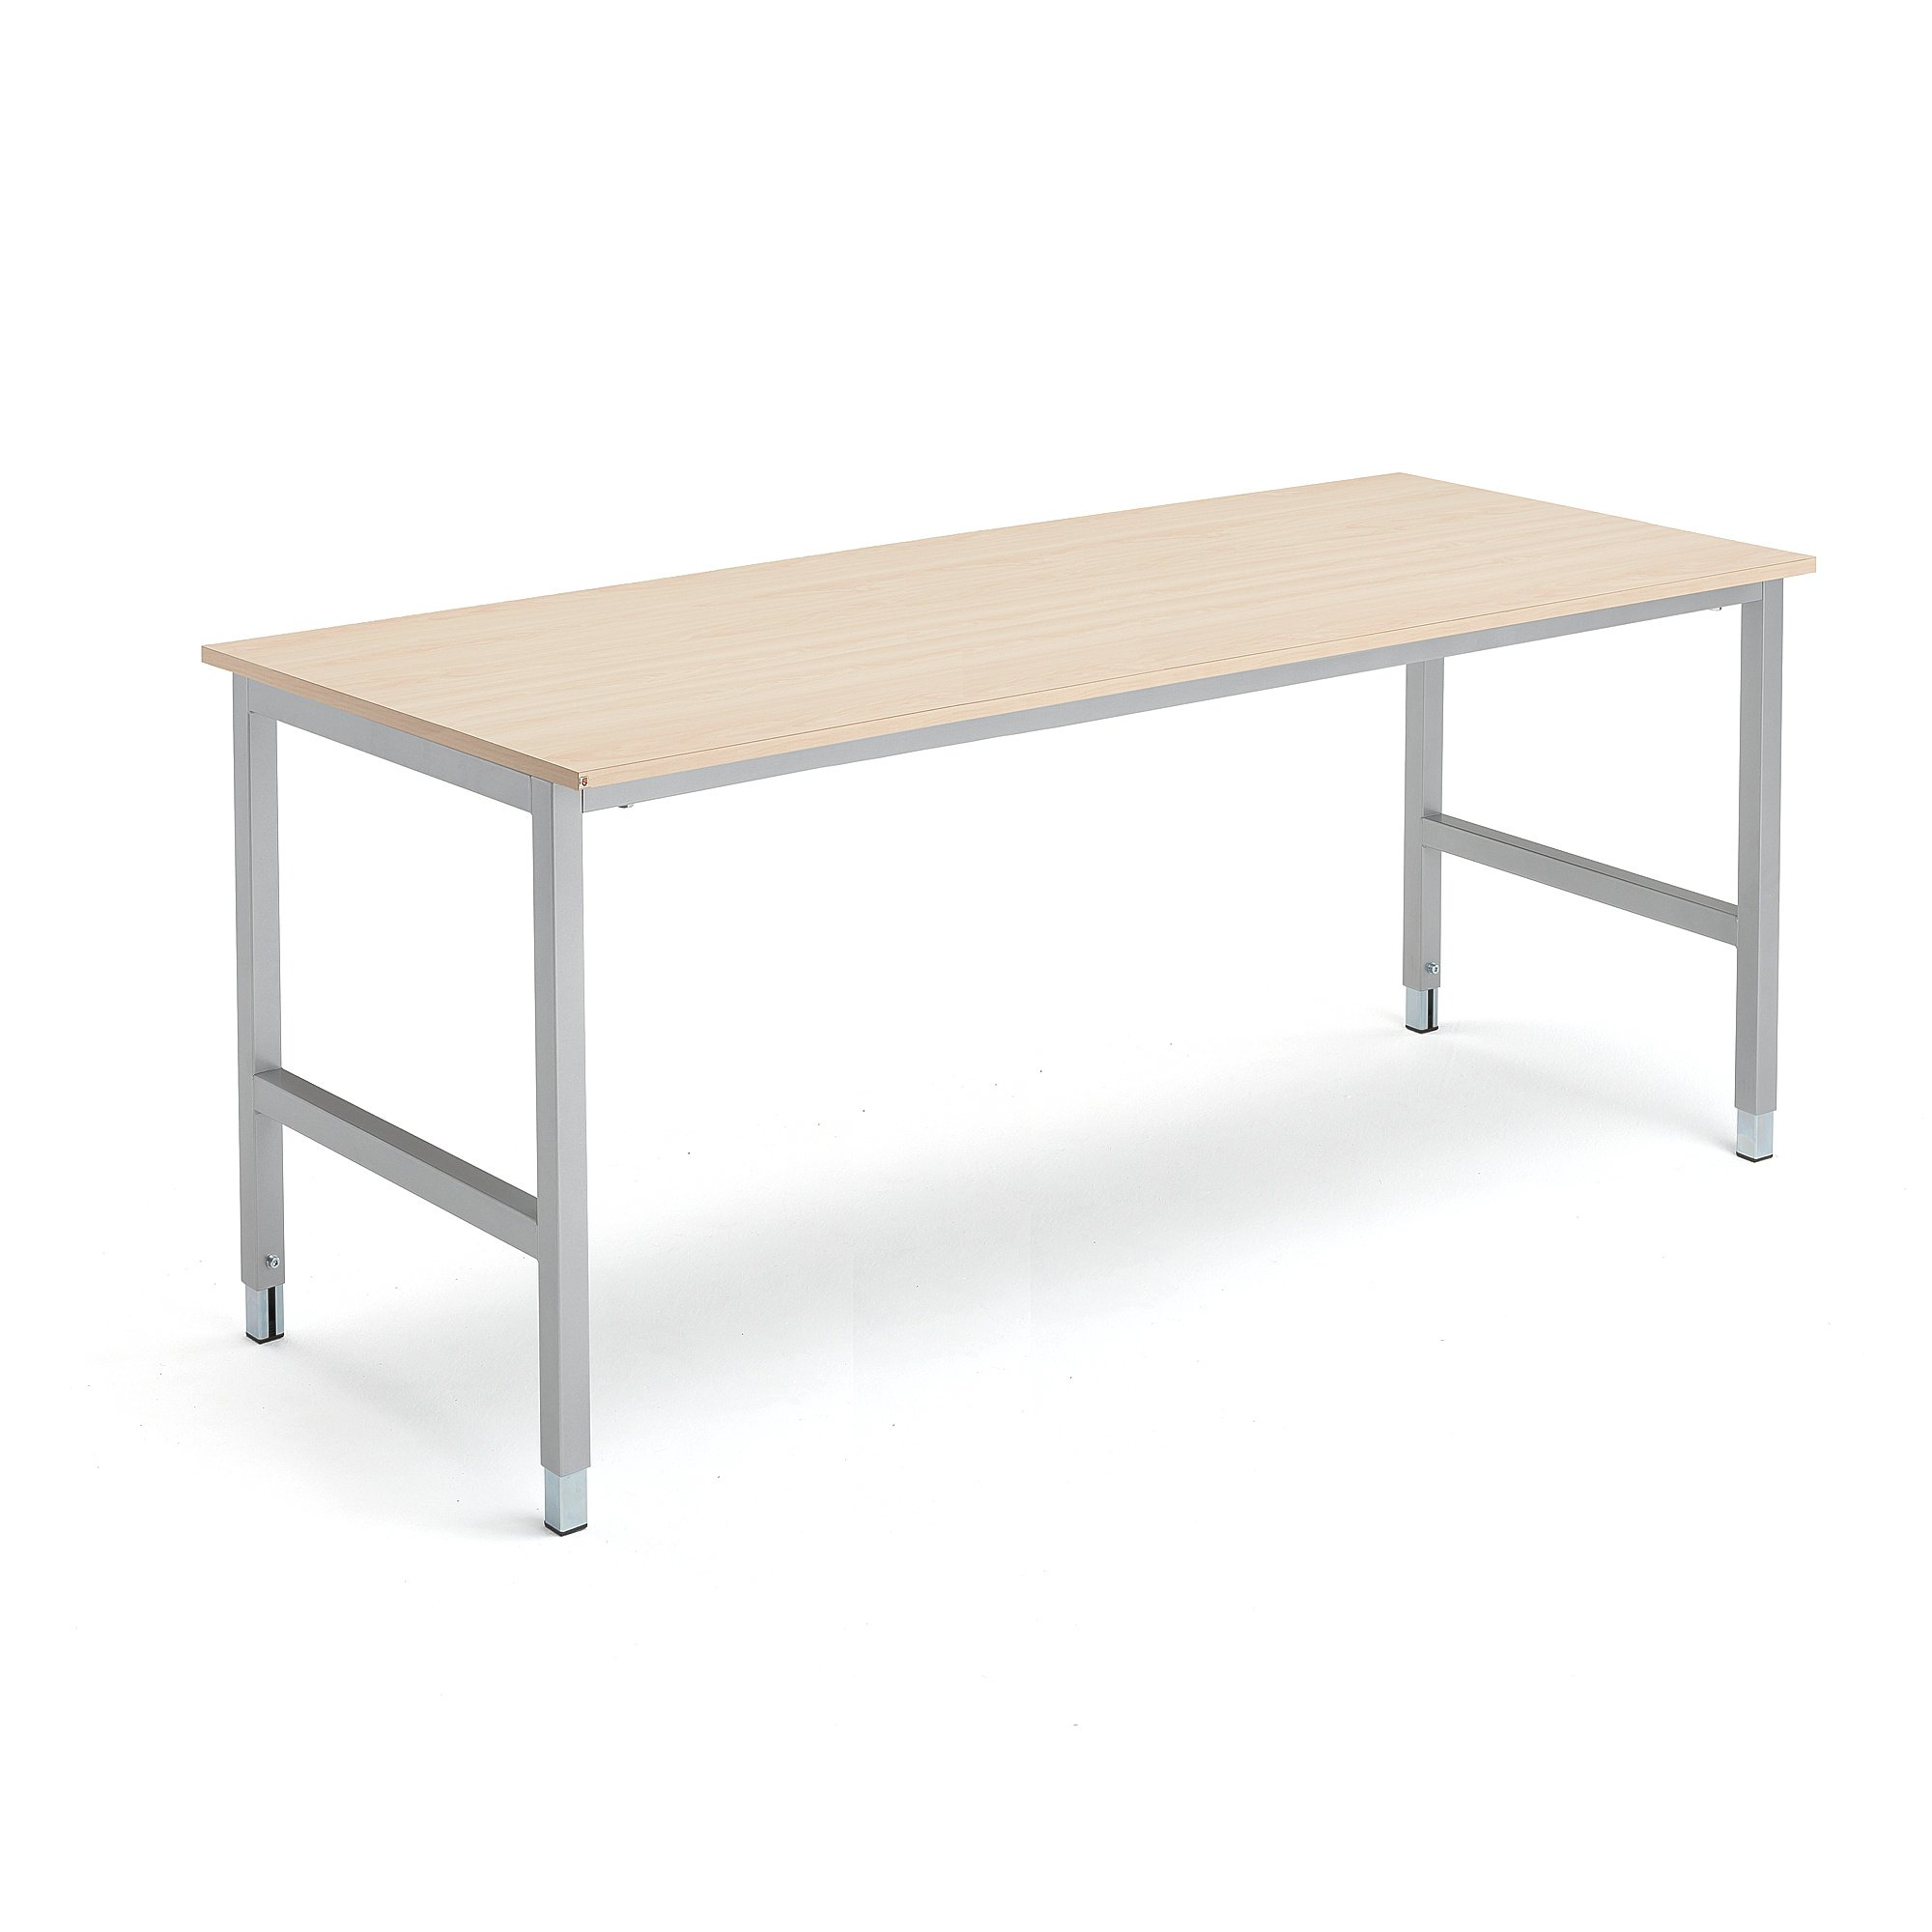 Pracovní stůl OPTION, 1800x800 mm, bříza, stříbrná